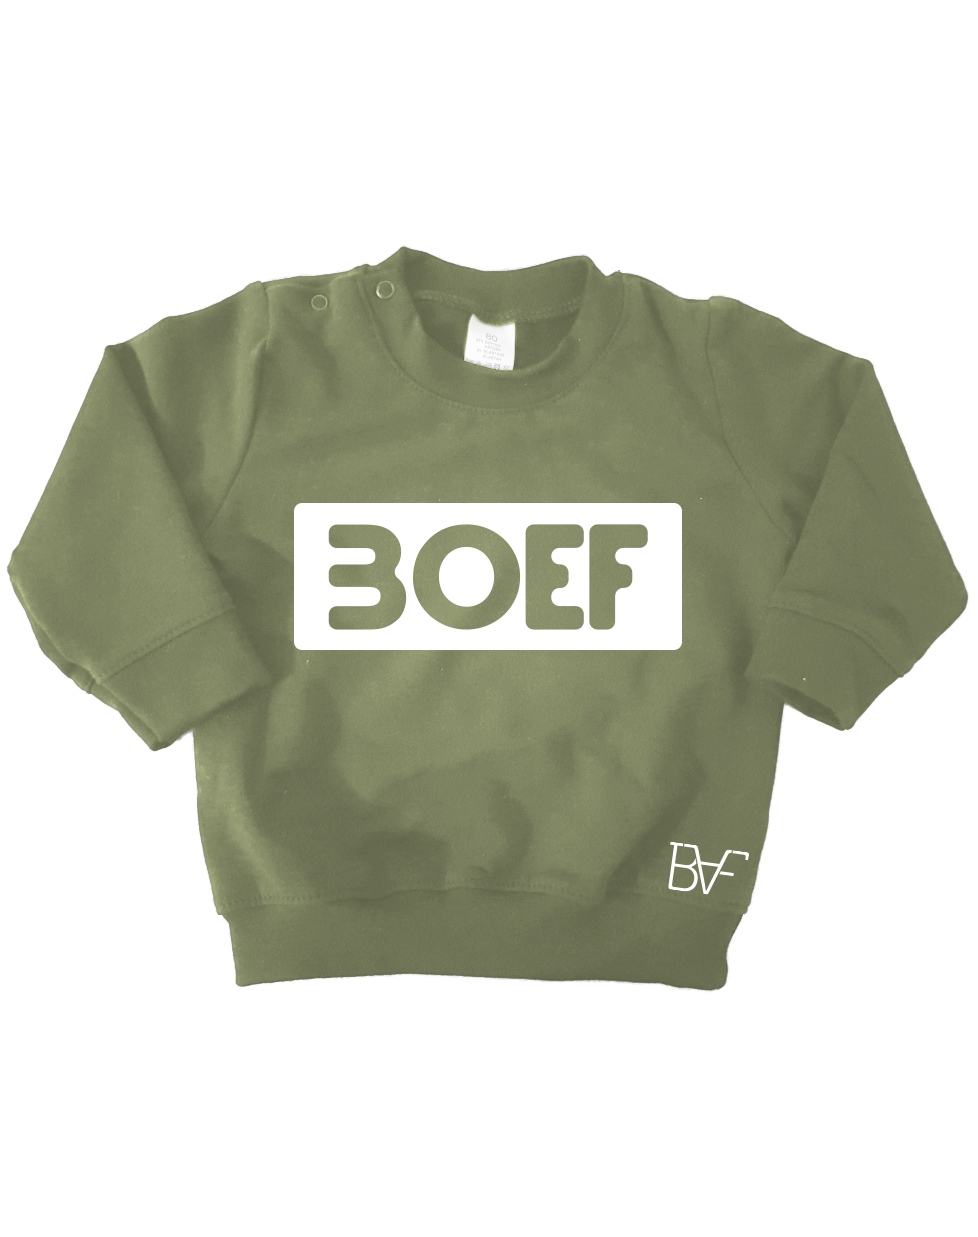 groen boef - Badass Fashion